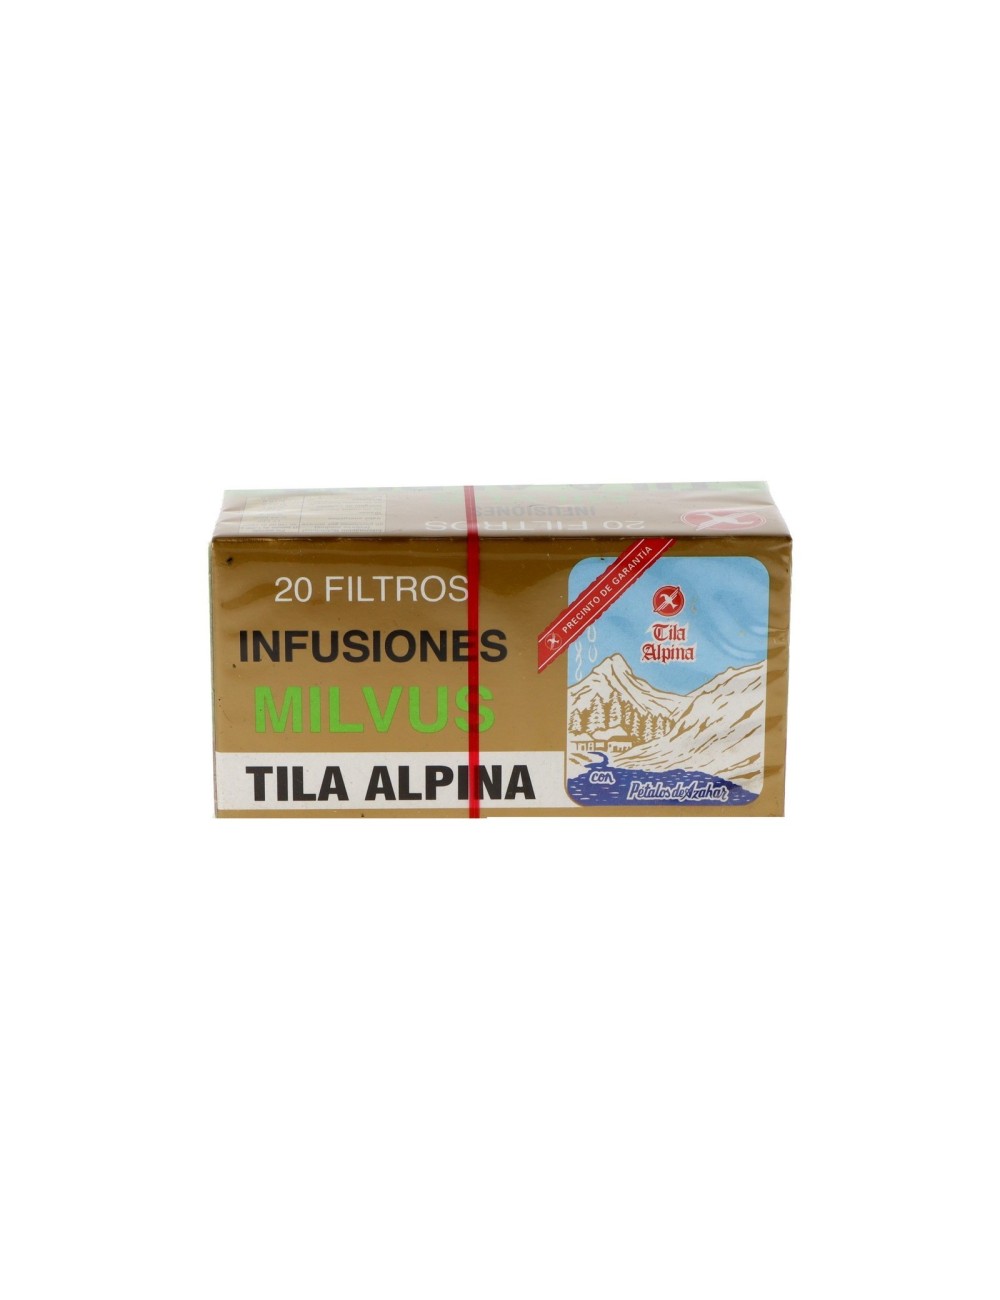 Comprar Milvus Infusiones Tila Alpina - 20 Filtros